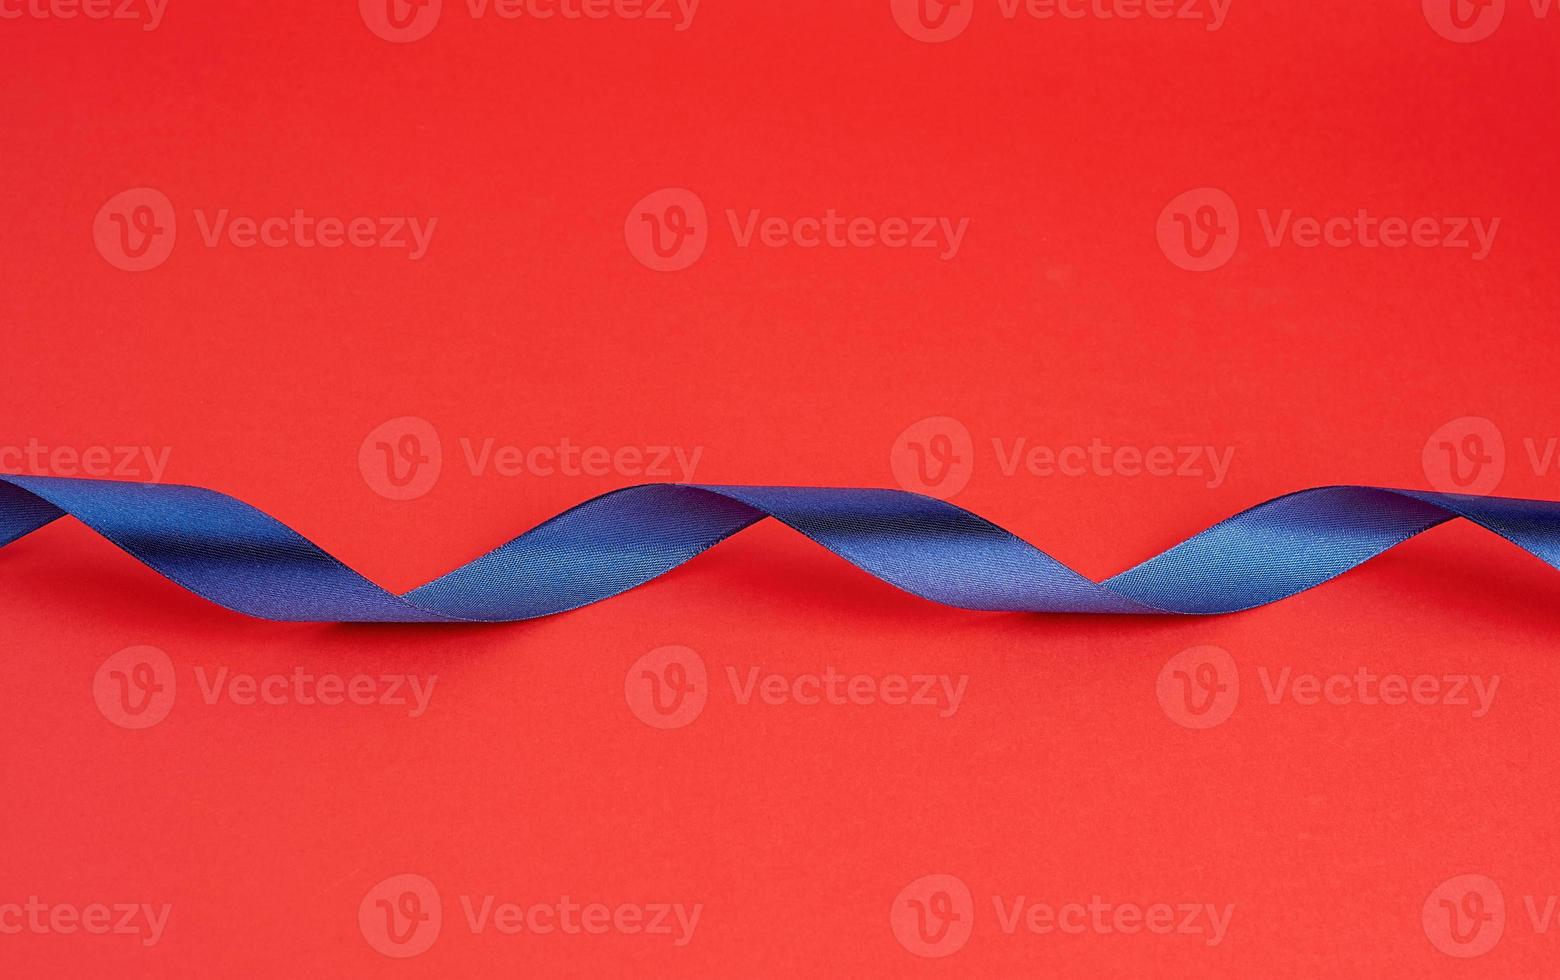 vriden mörk blå silke skinande band på en röd bakgrund foto